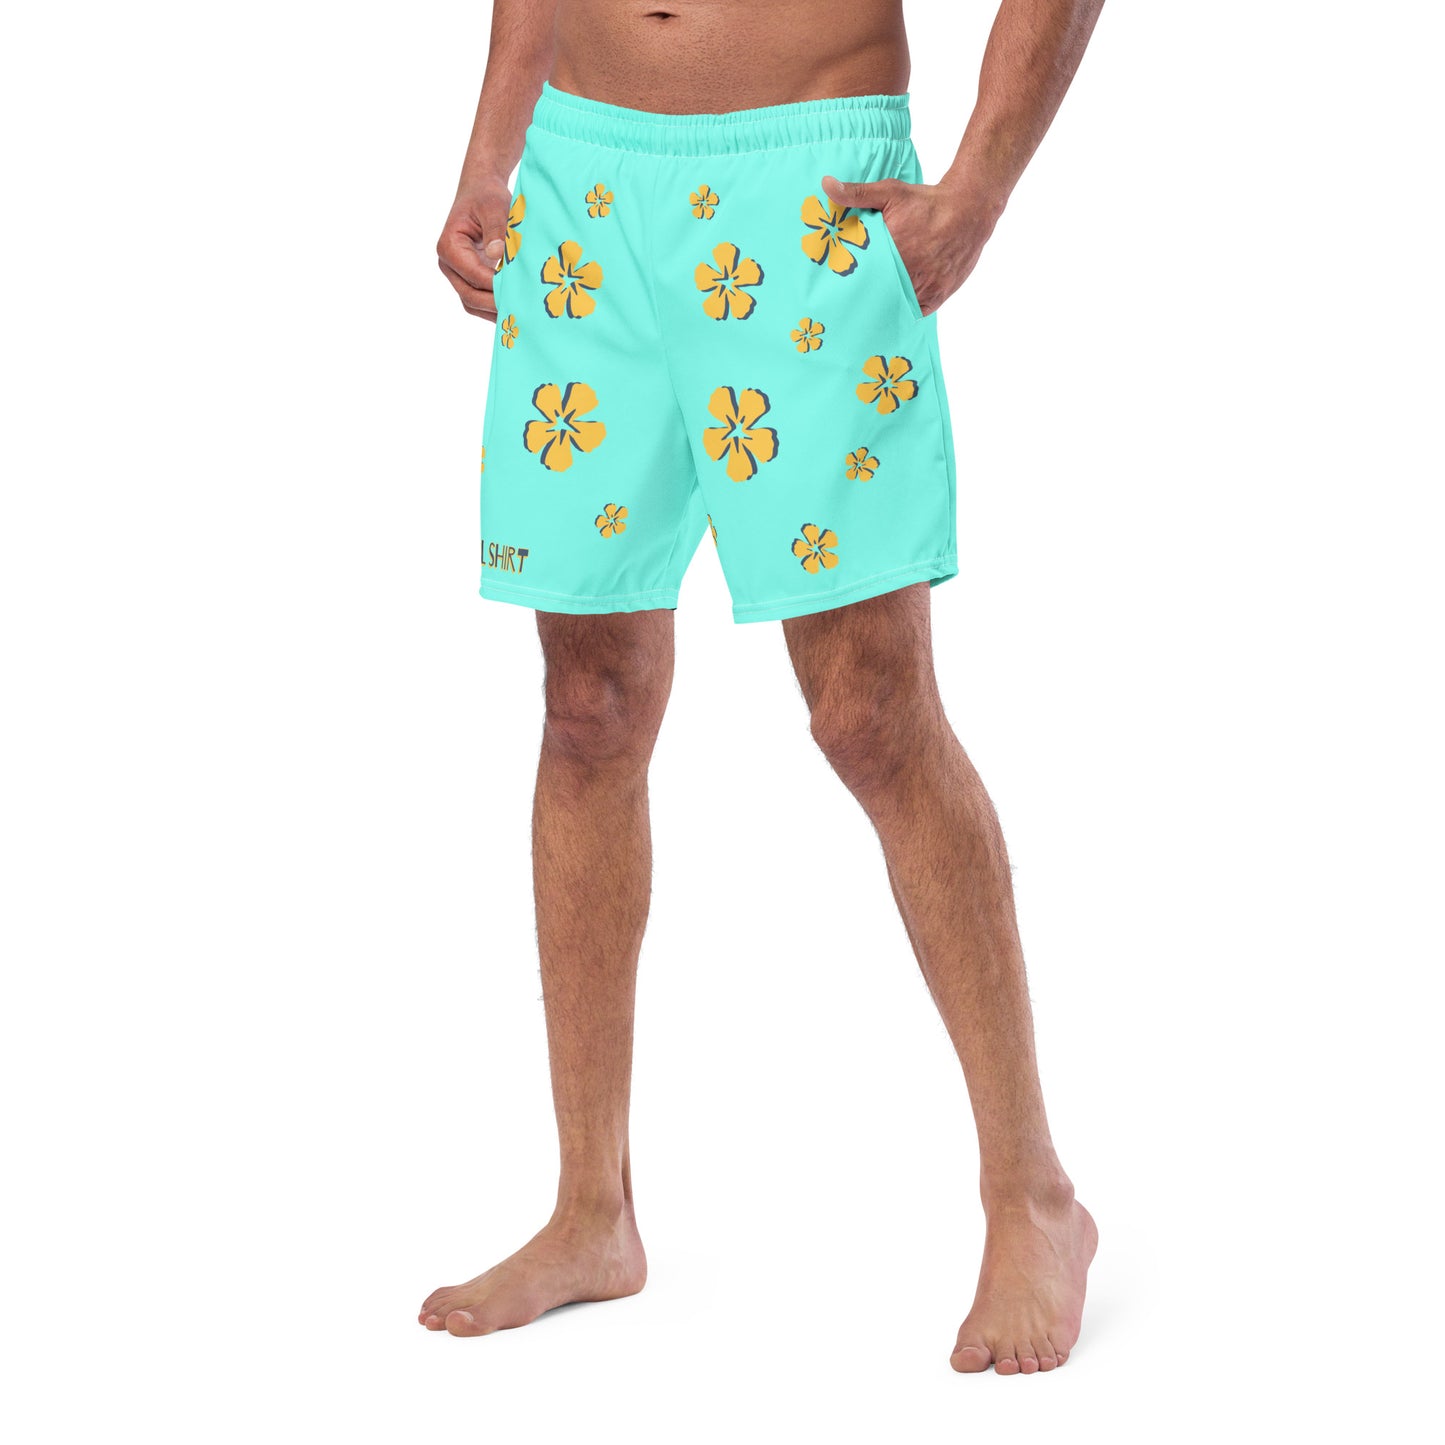 Men's floral swim trunks